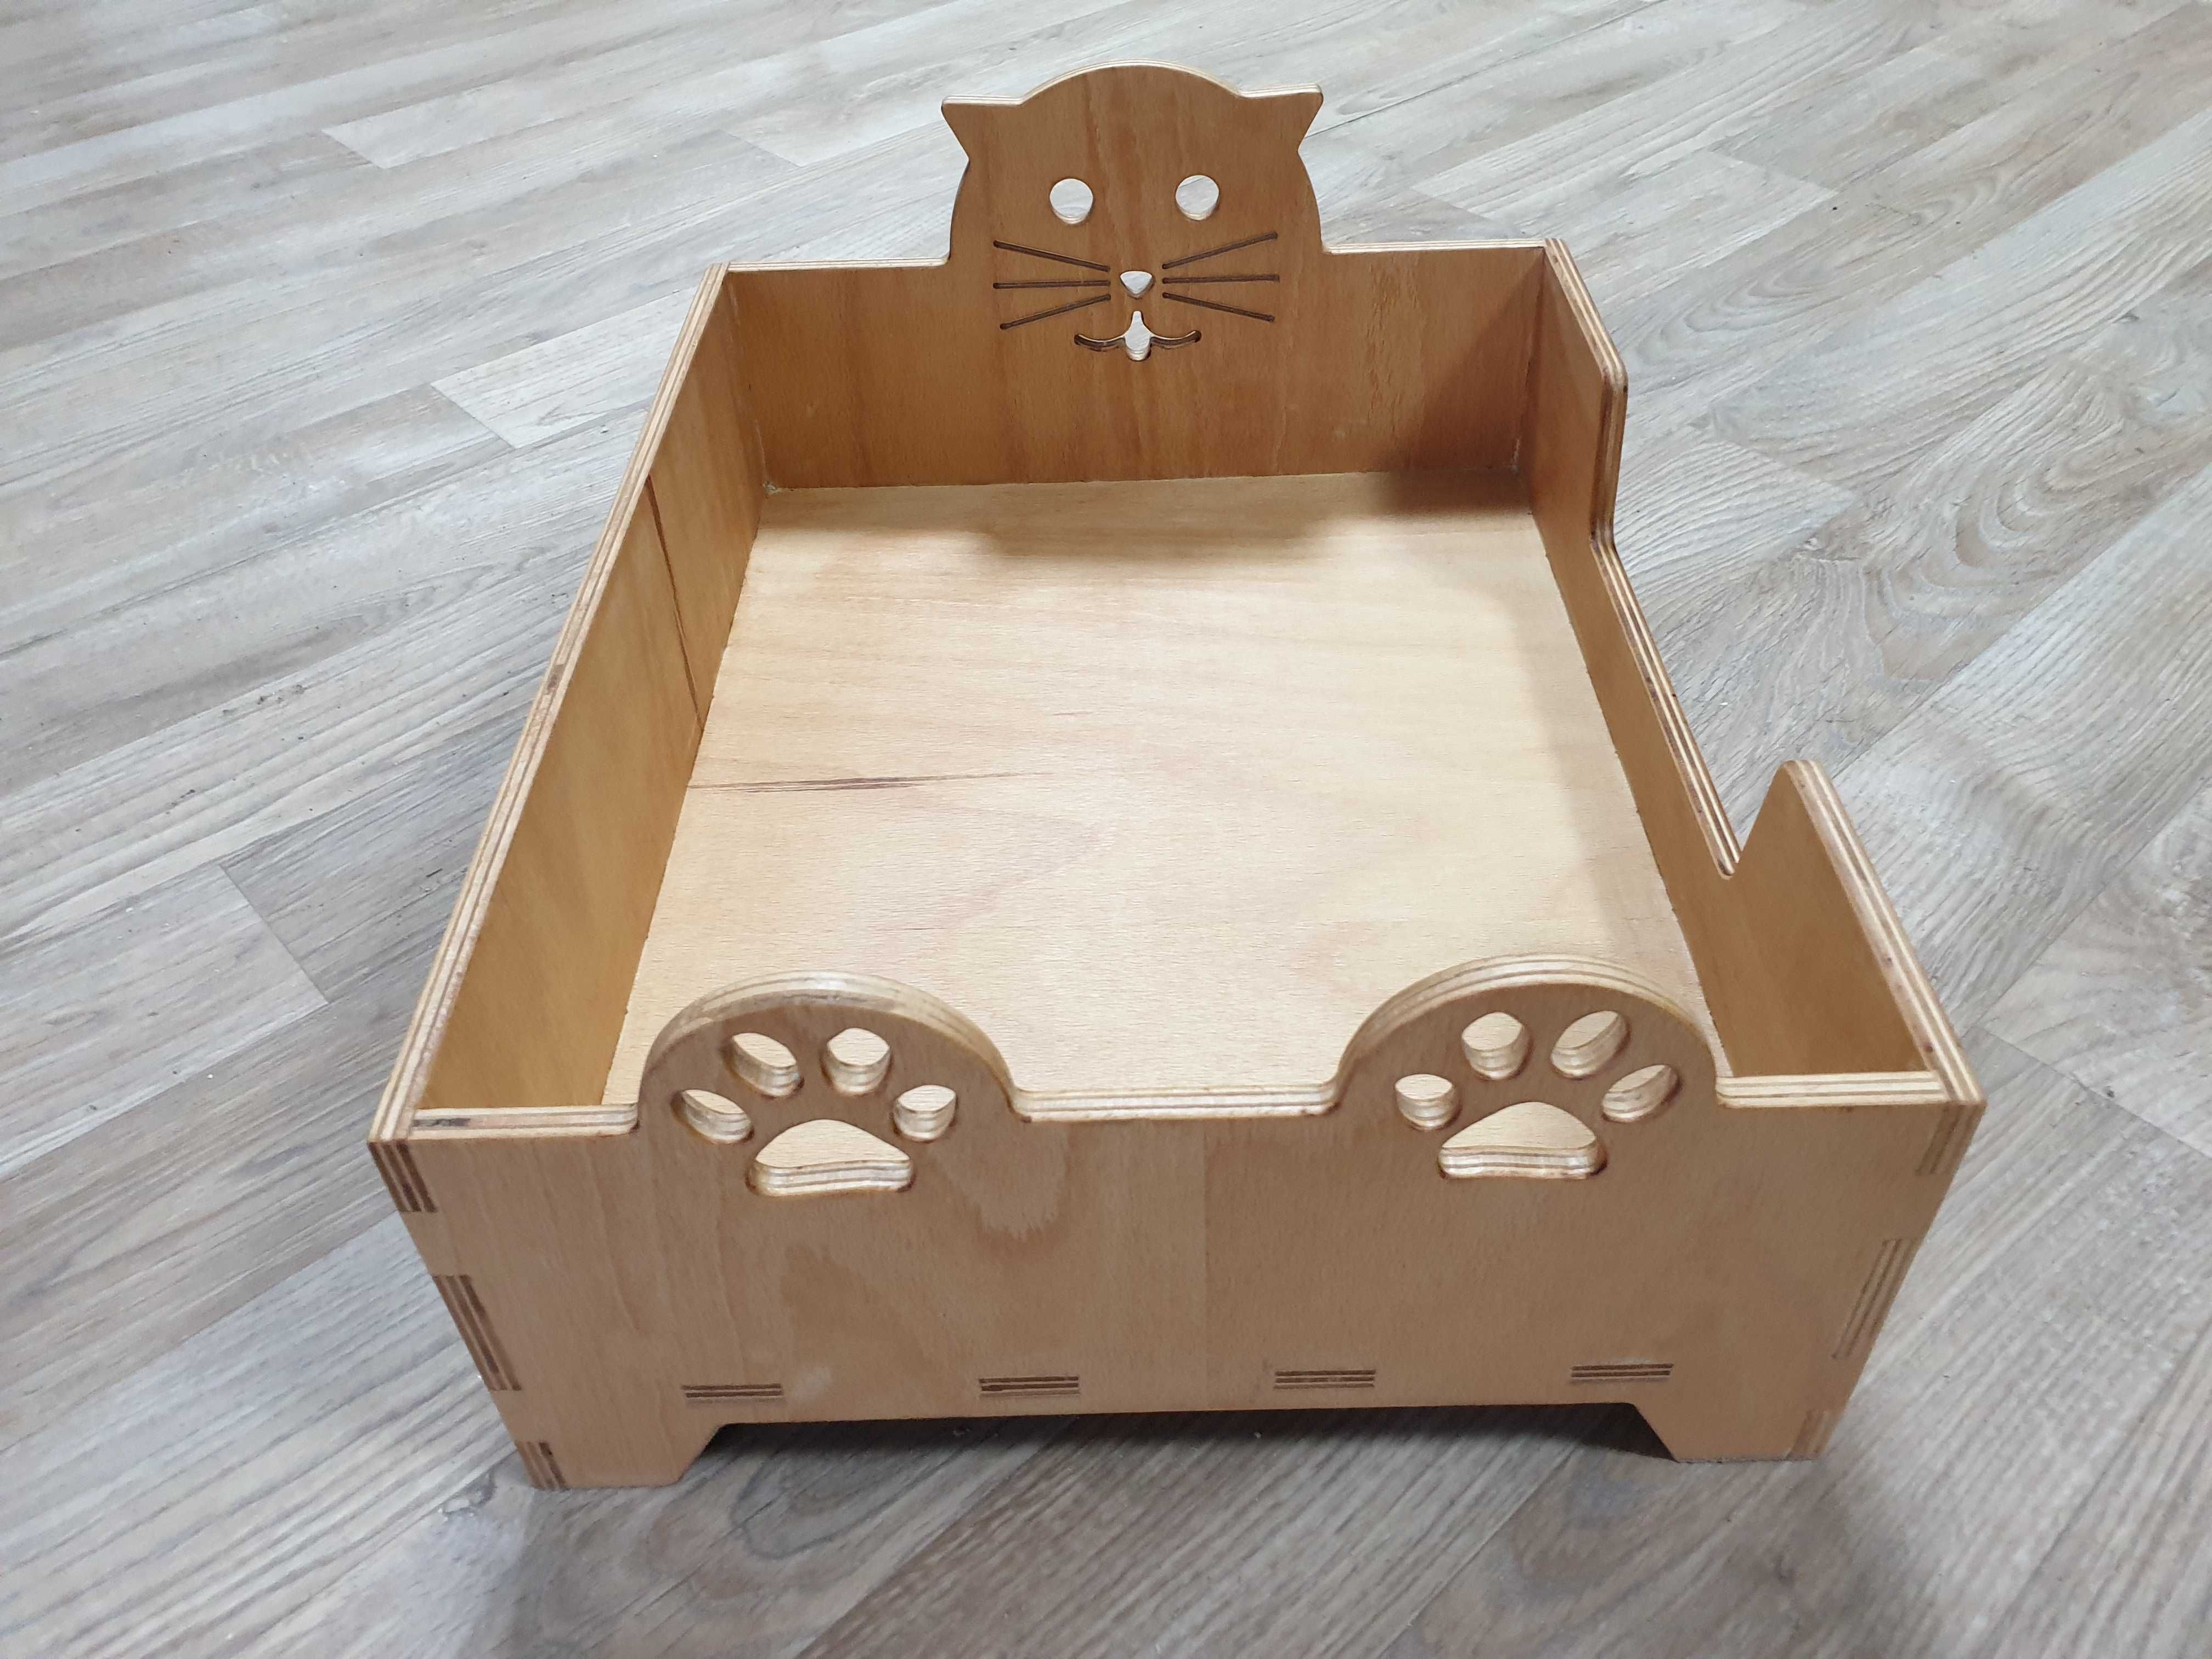 Pătuț din lemn pentru pisici